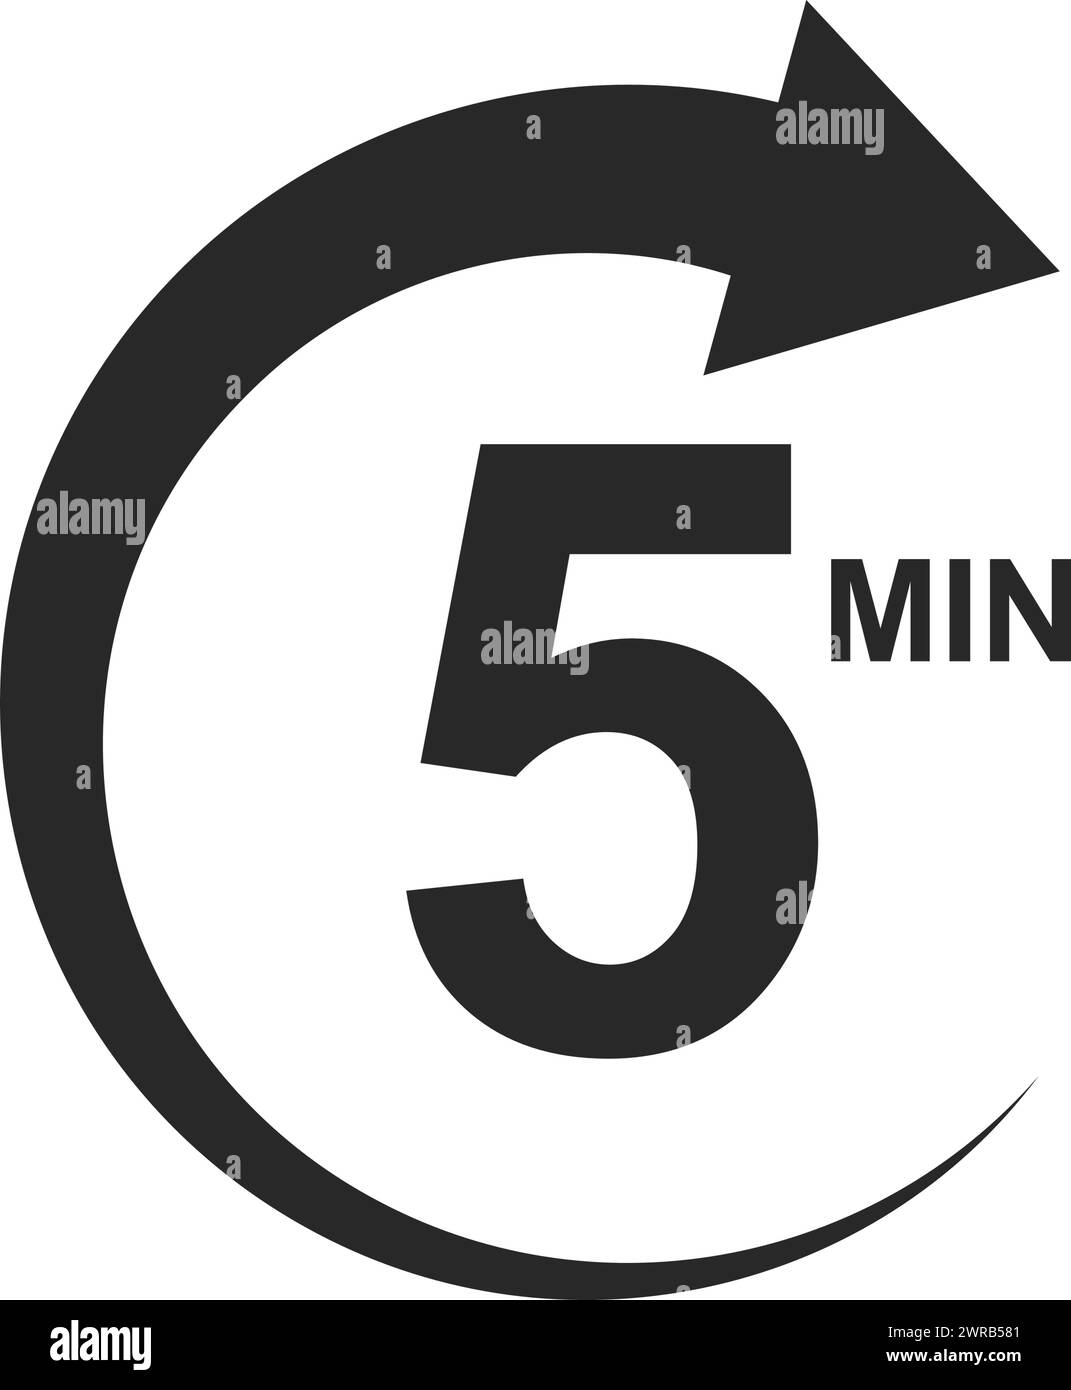 Fünf-Minuten-Symbol mit rundem Pfeil. 5 Minuten Stoppuhr oder Countdawn-Schild. Sport- oder Kochtimer isoliert auf weißem Hintergrund. Piktogramm für Lieferung, Frist, Dauer. Vektorgrafik. Stock Vektor